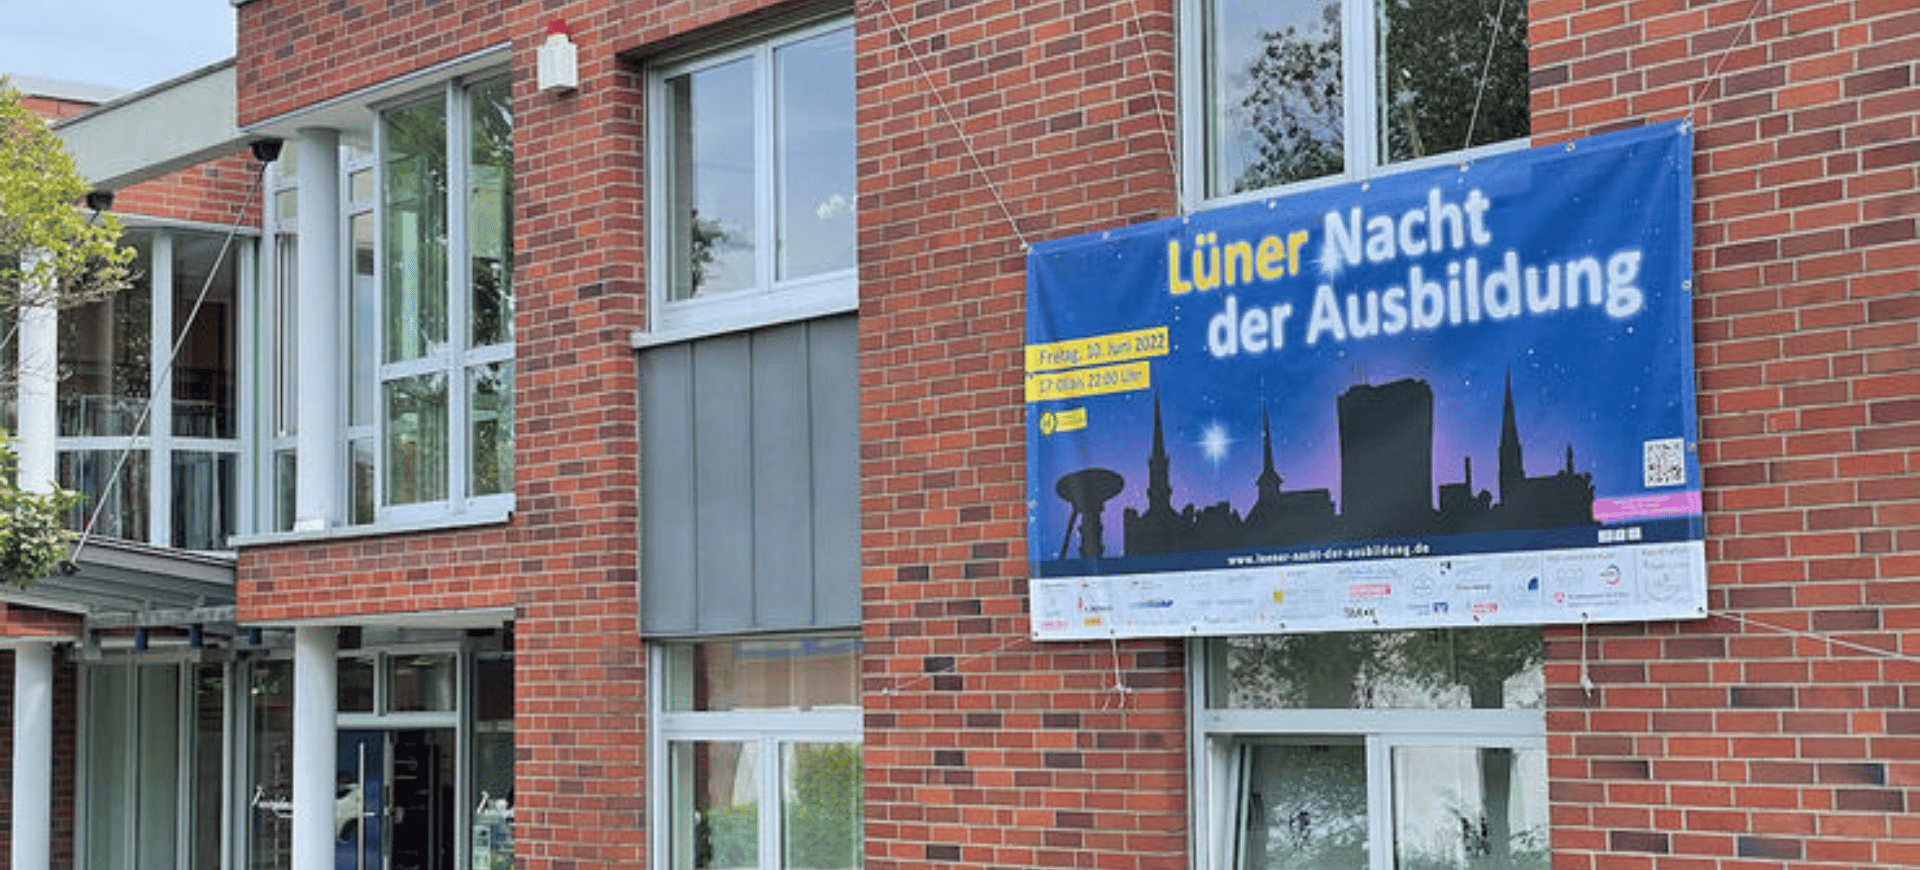 Beitragsbild Fassade des Firmengebäudes mit dem Banner für die Lüner Nacht der Ausbildung